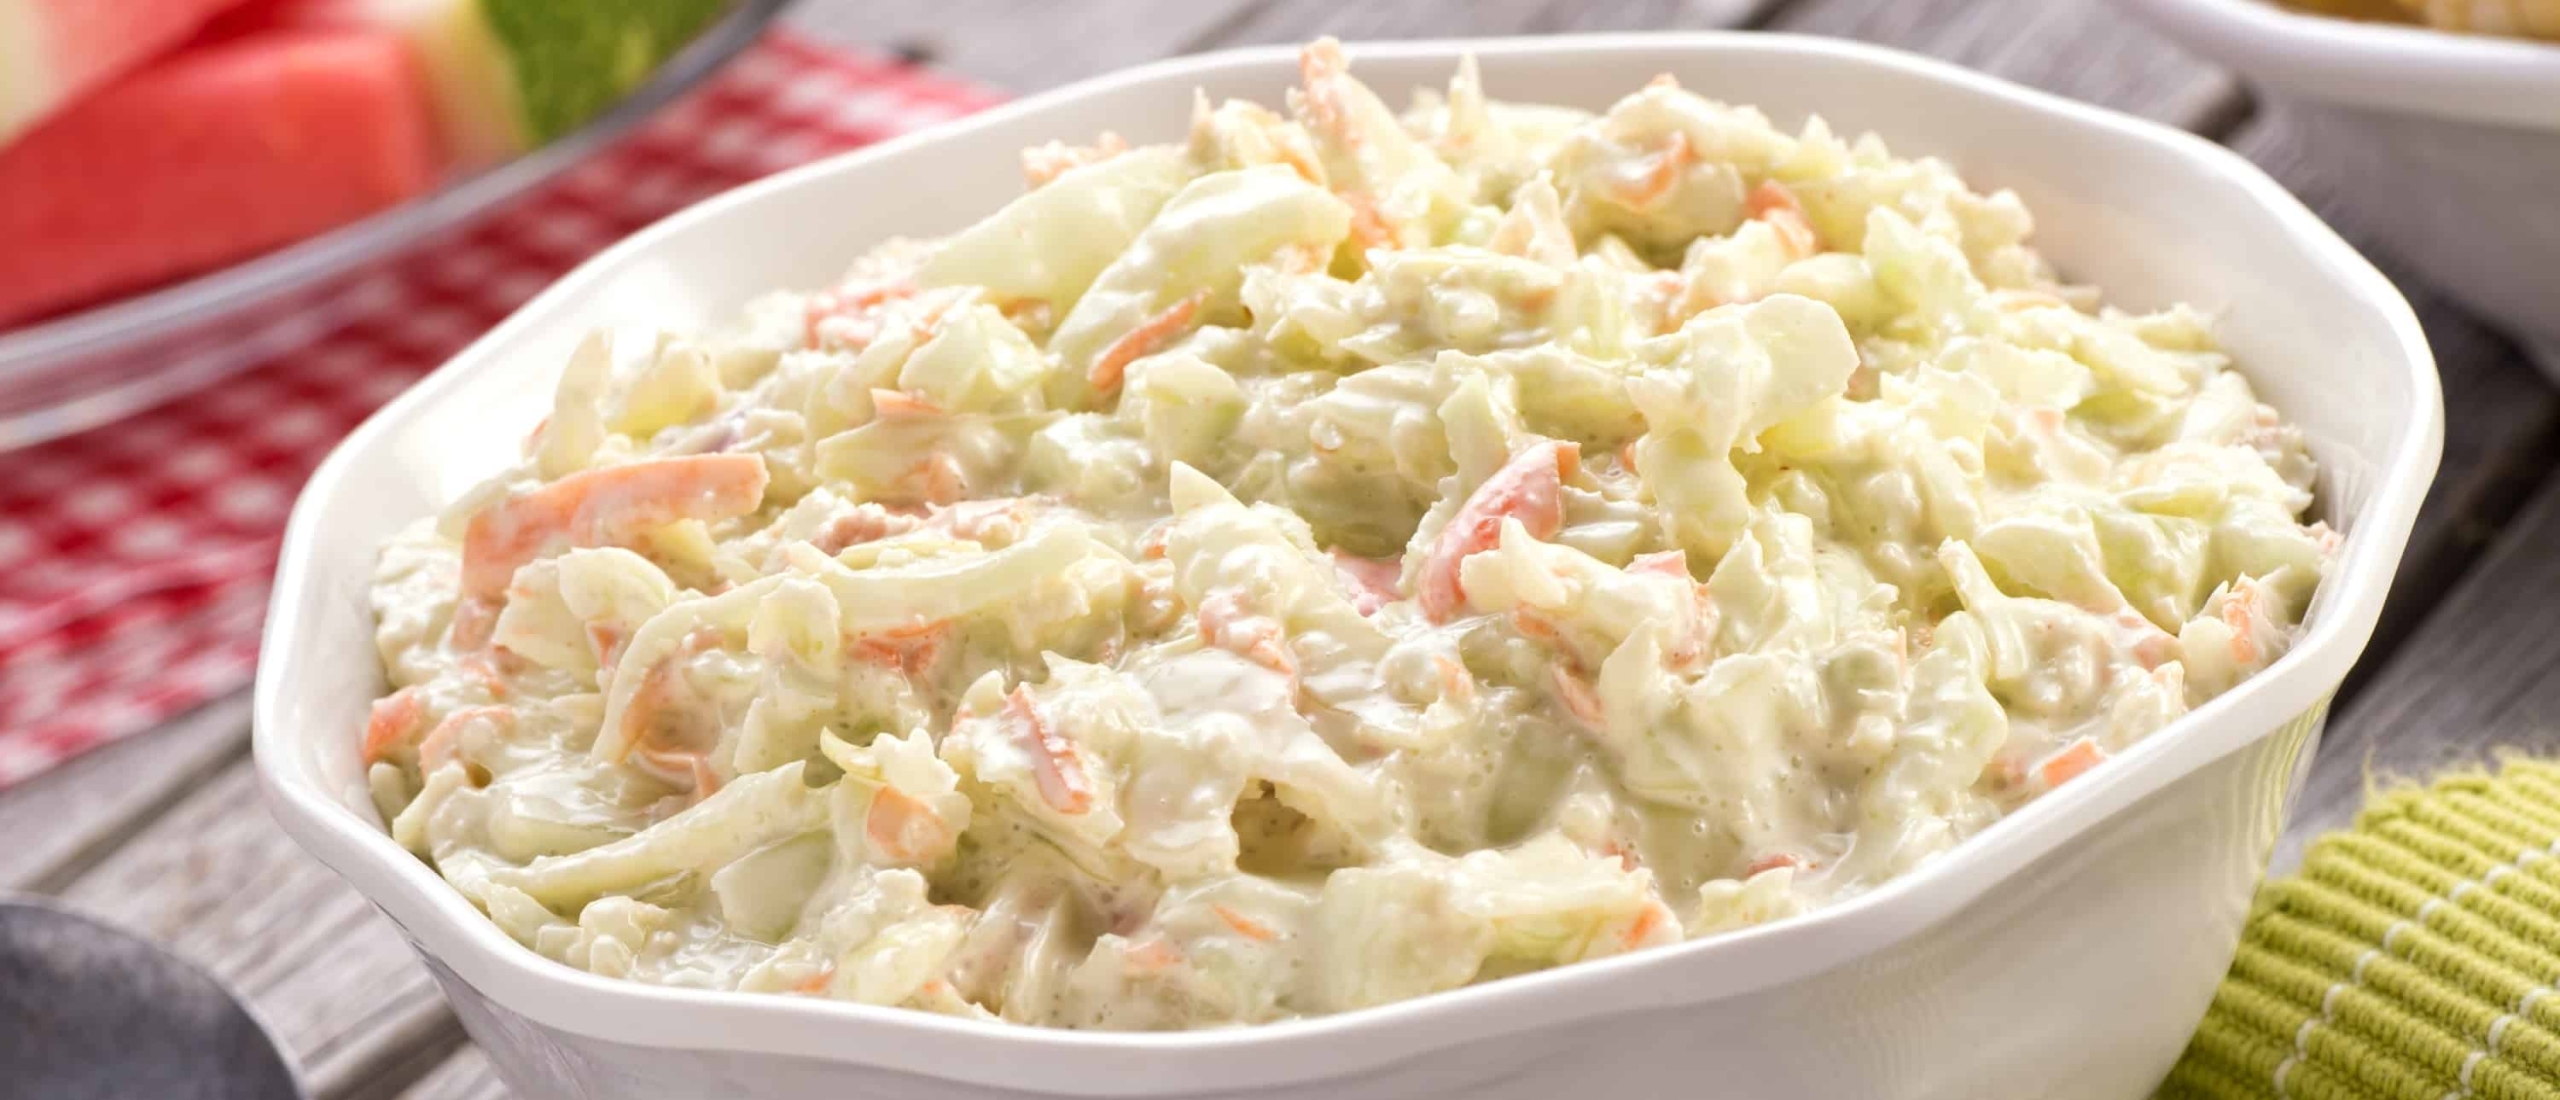 coleslaw-salade